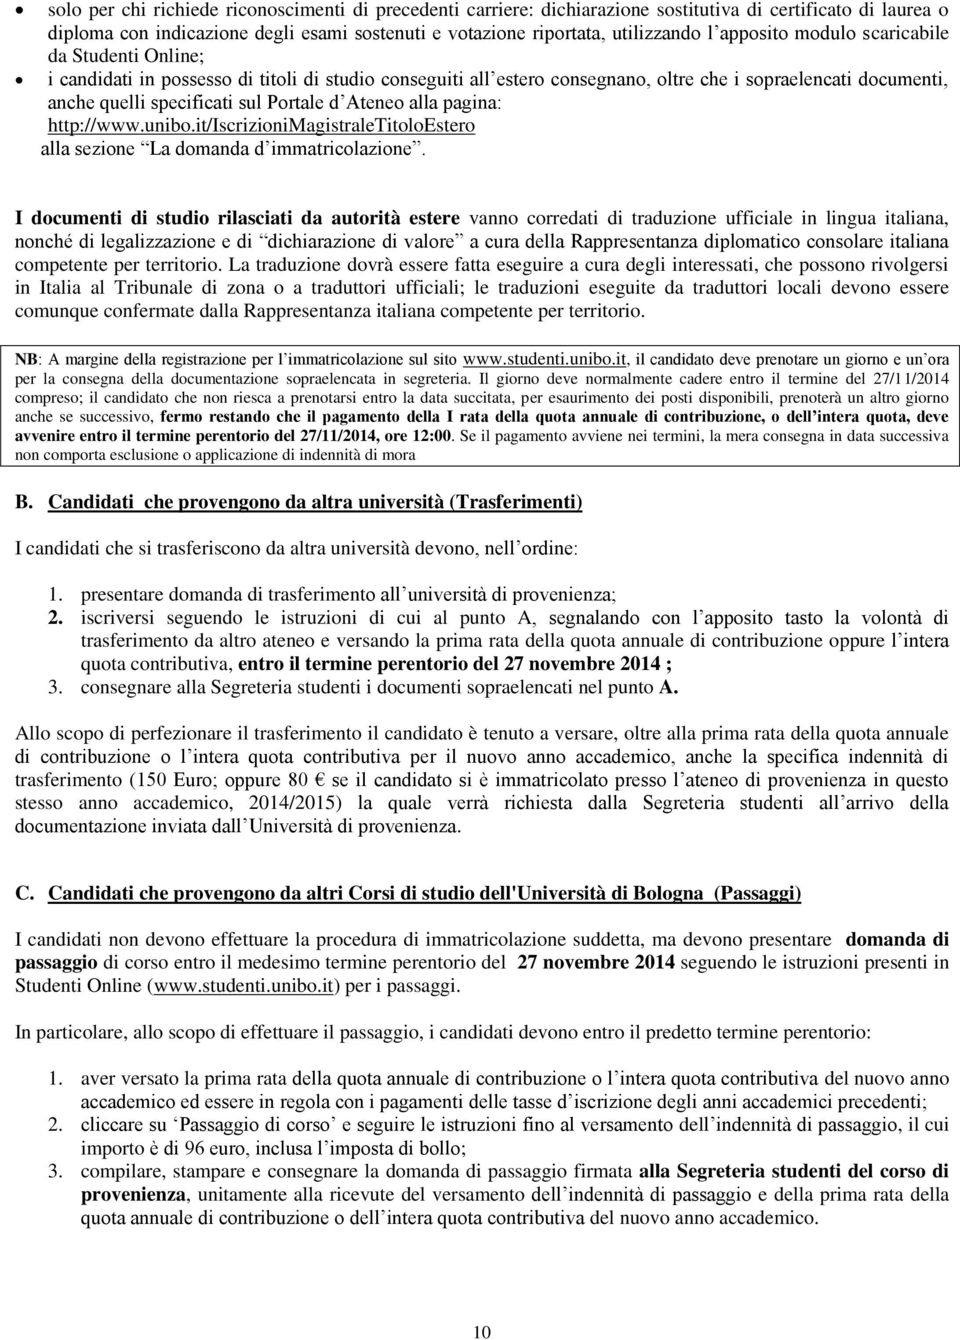 d Ateneo alla pagina: http://www.unibo.it/iscrizionimagistraletitoloestero alla sezione La domanda d immatricolazione.